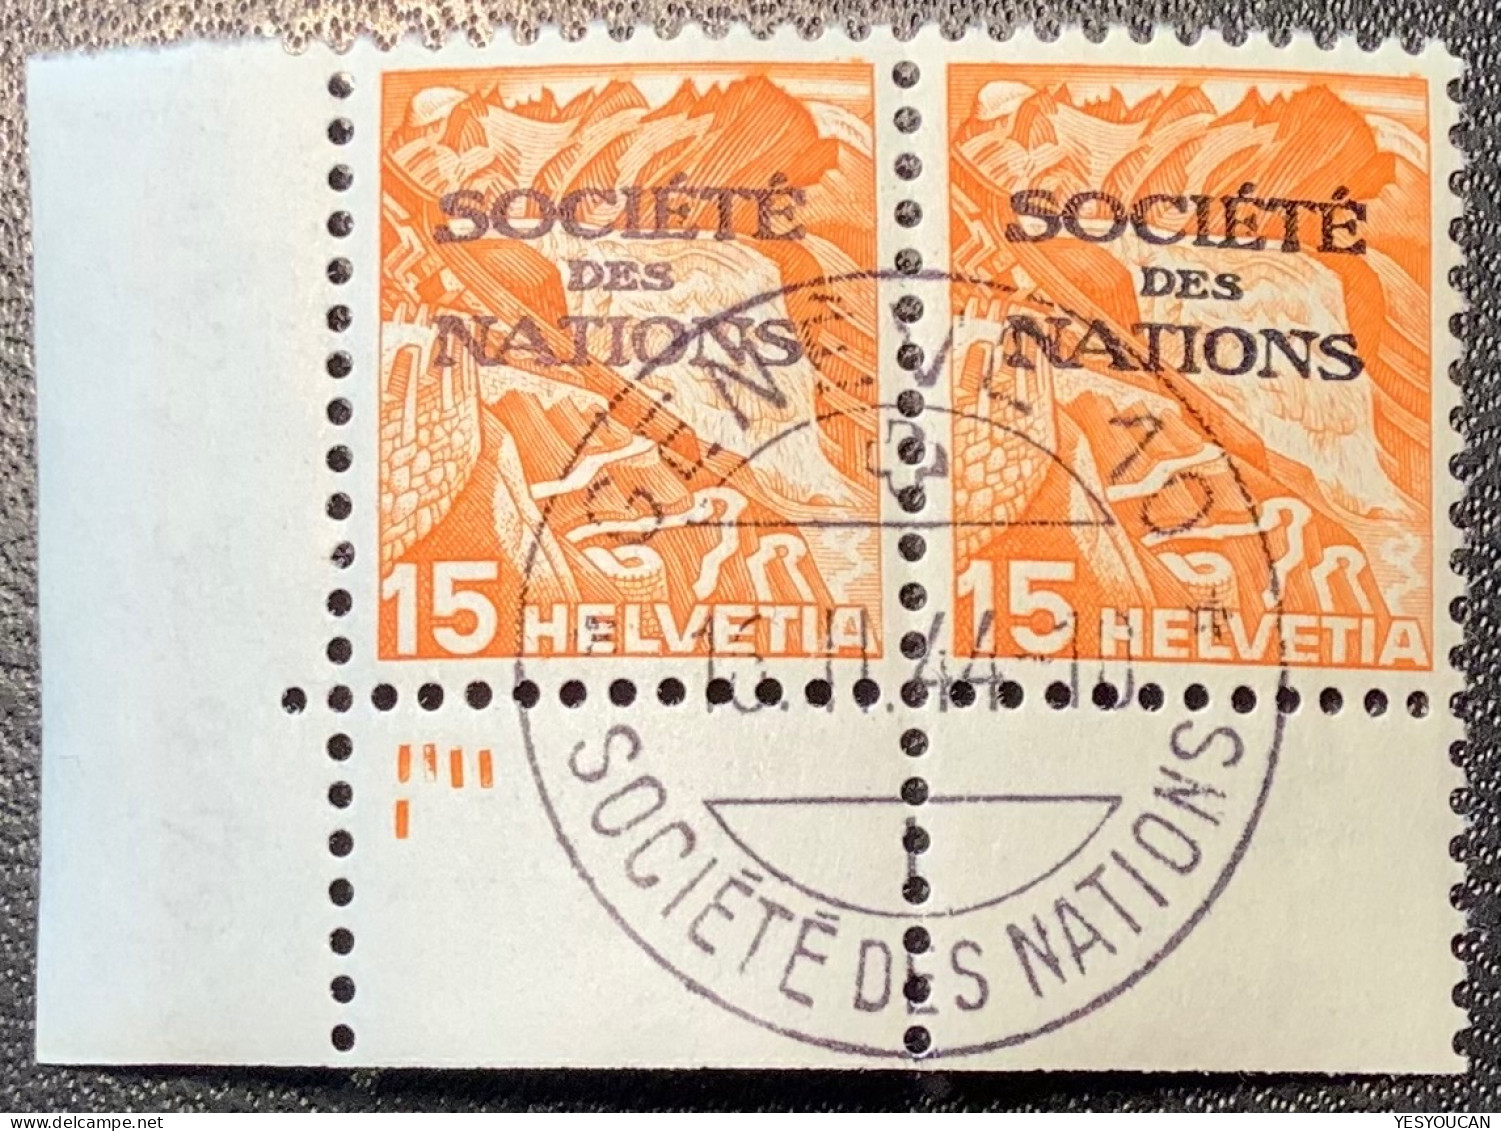 SDN 1936-38 PLATTENZEICHEN-BOGENECKE #50y LUXUS S.D.N SOCIÉTÉ DES NATIONS (UN UNO Schweiz Völkerbund Genf Genève - Dienstmarken